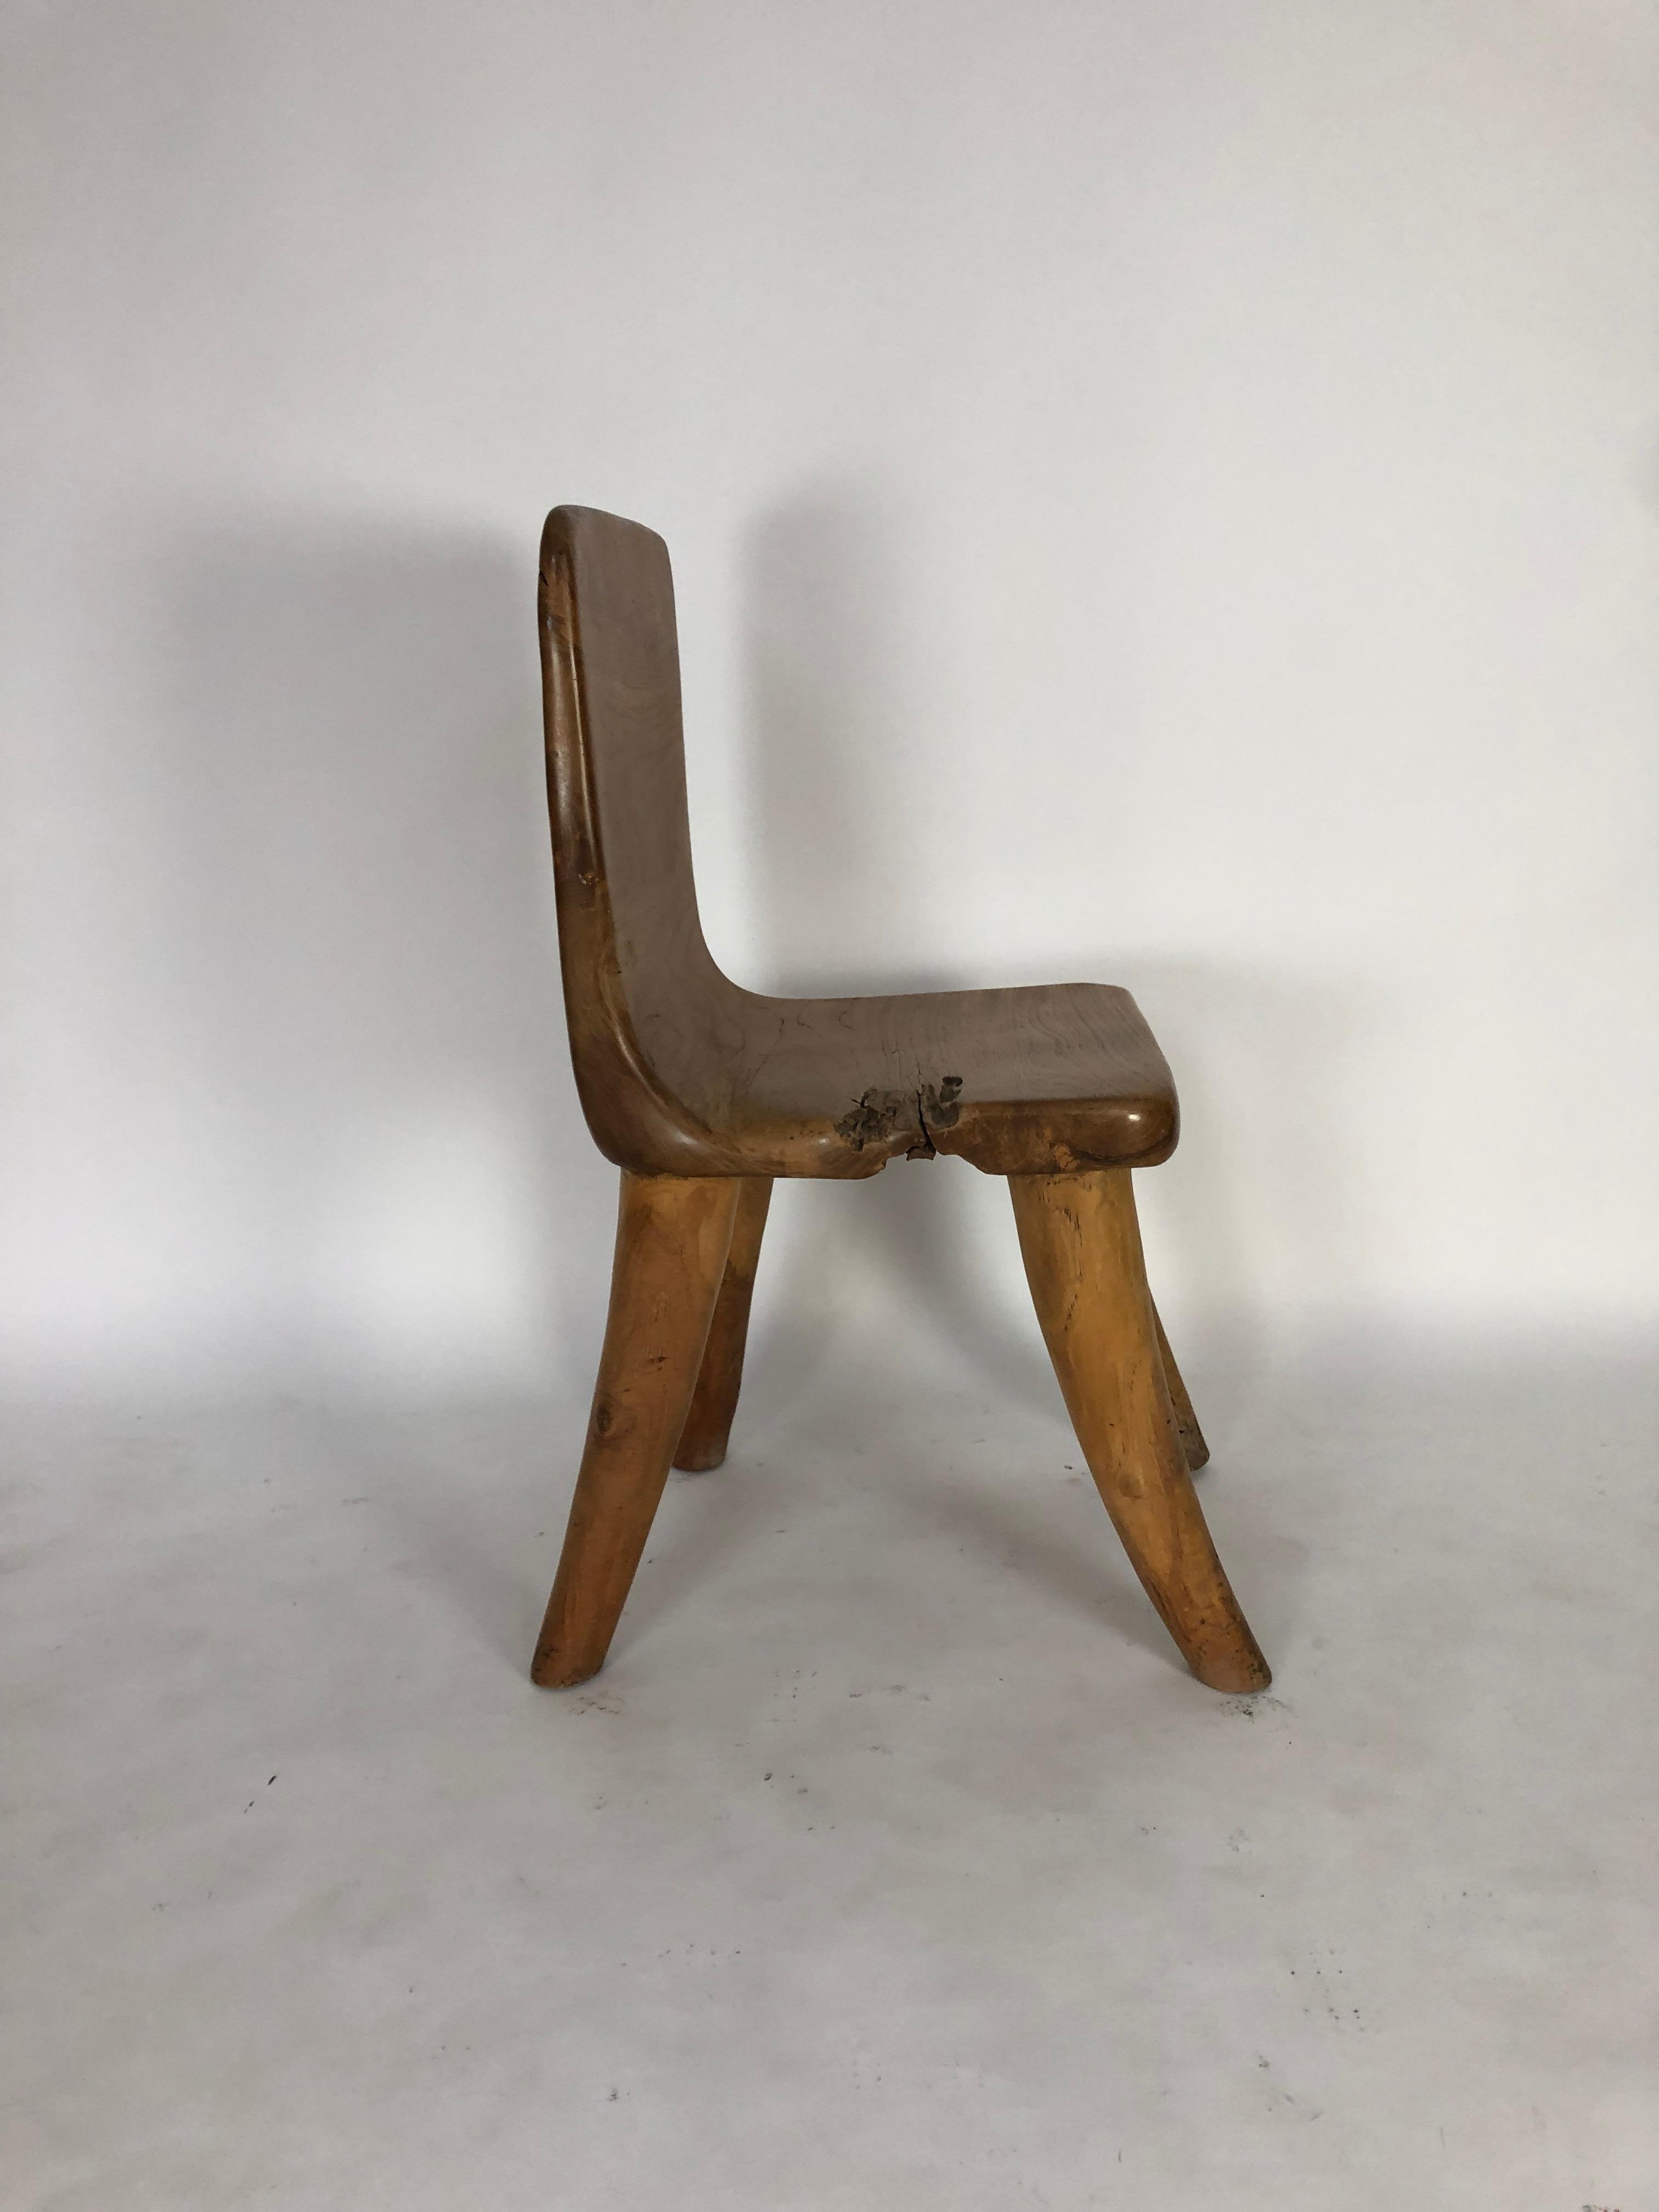 Unique Carved Teak Chair #1 1